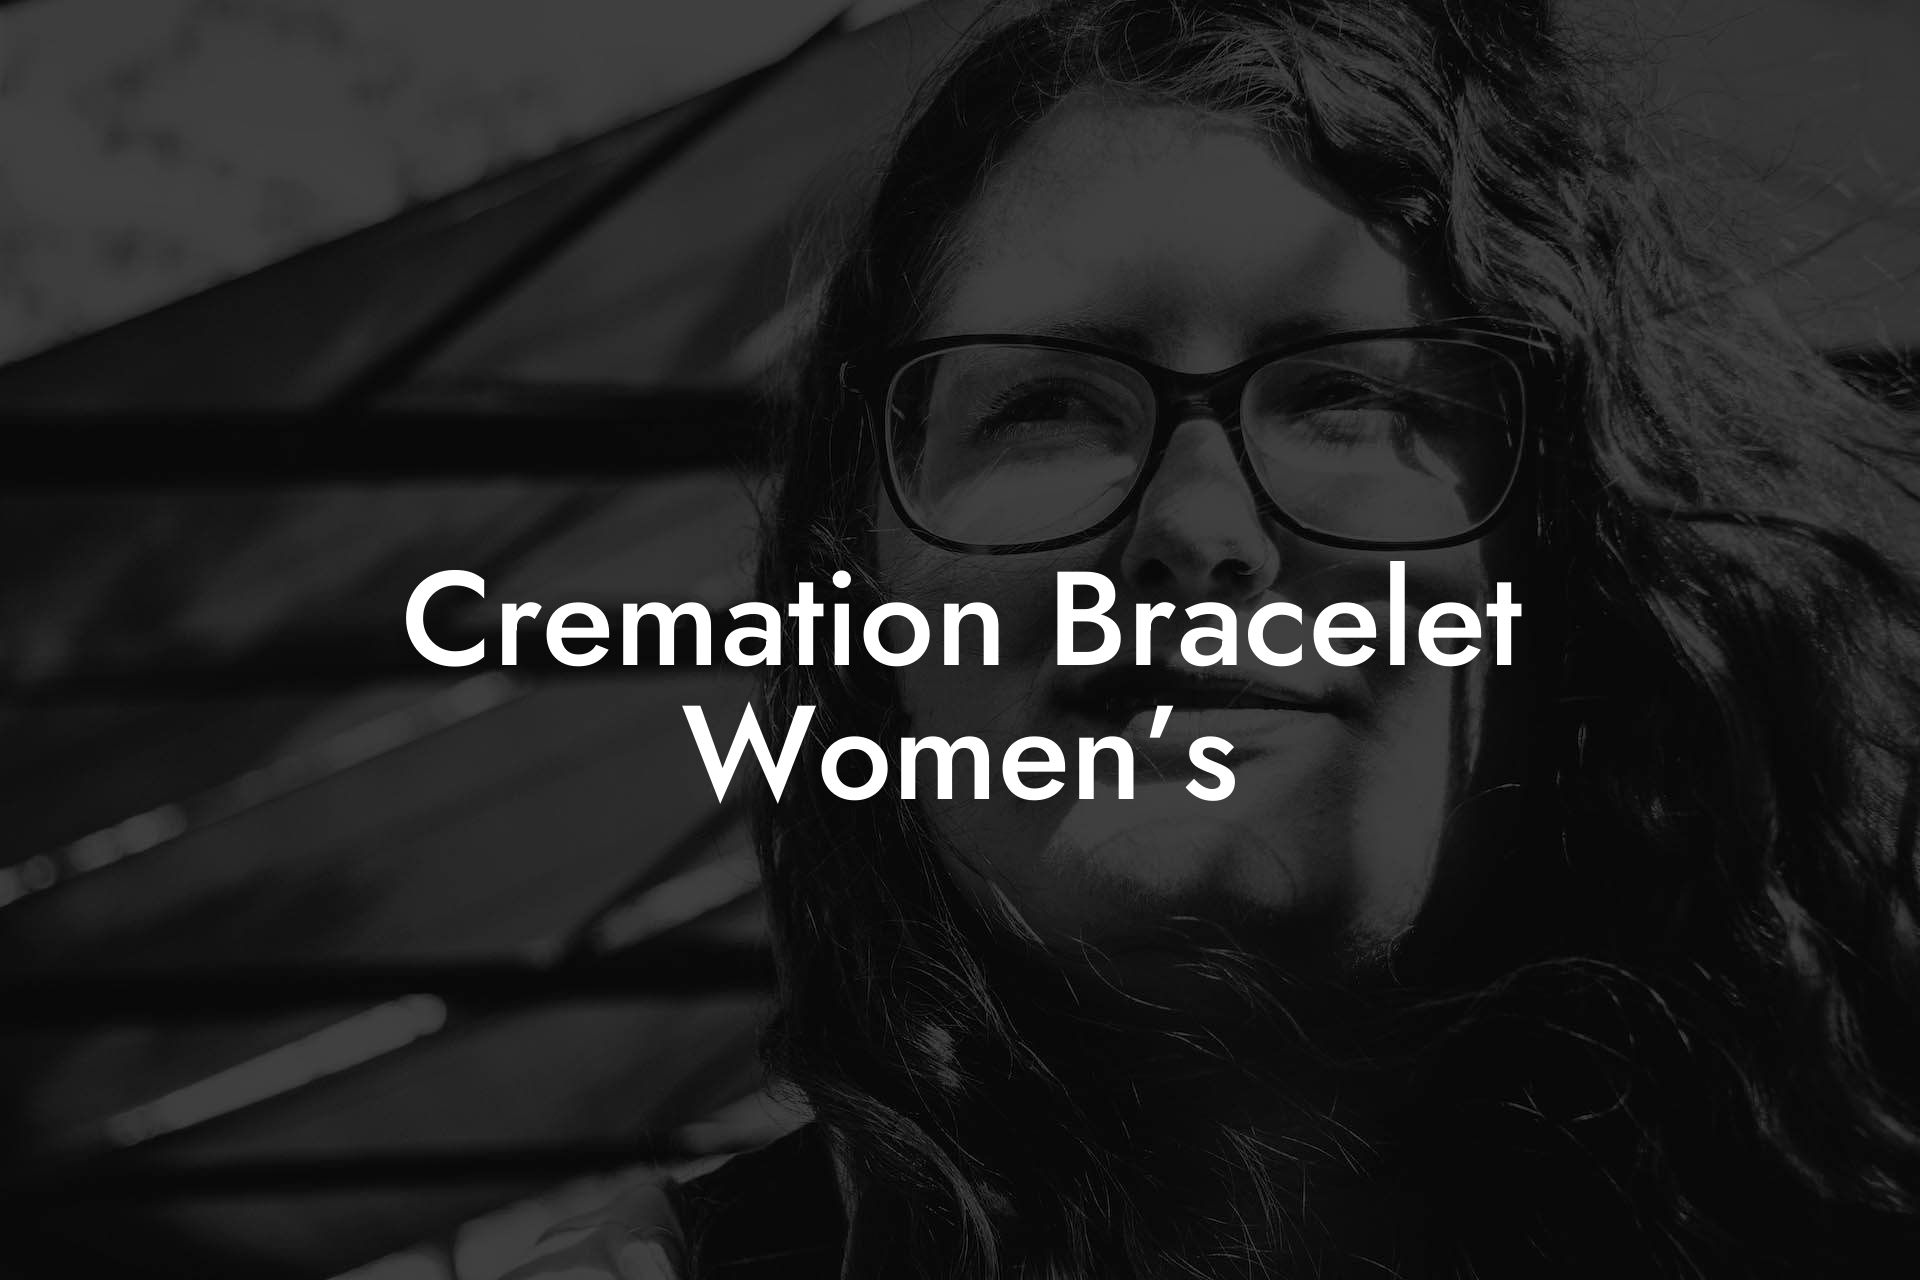 Cremation Bracelet Women’s